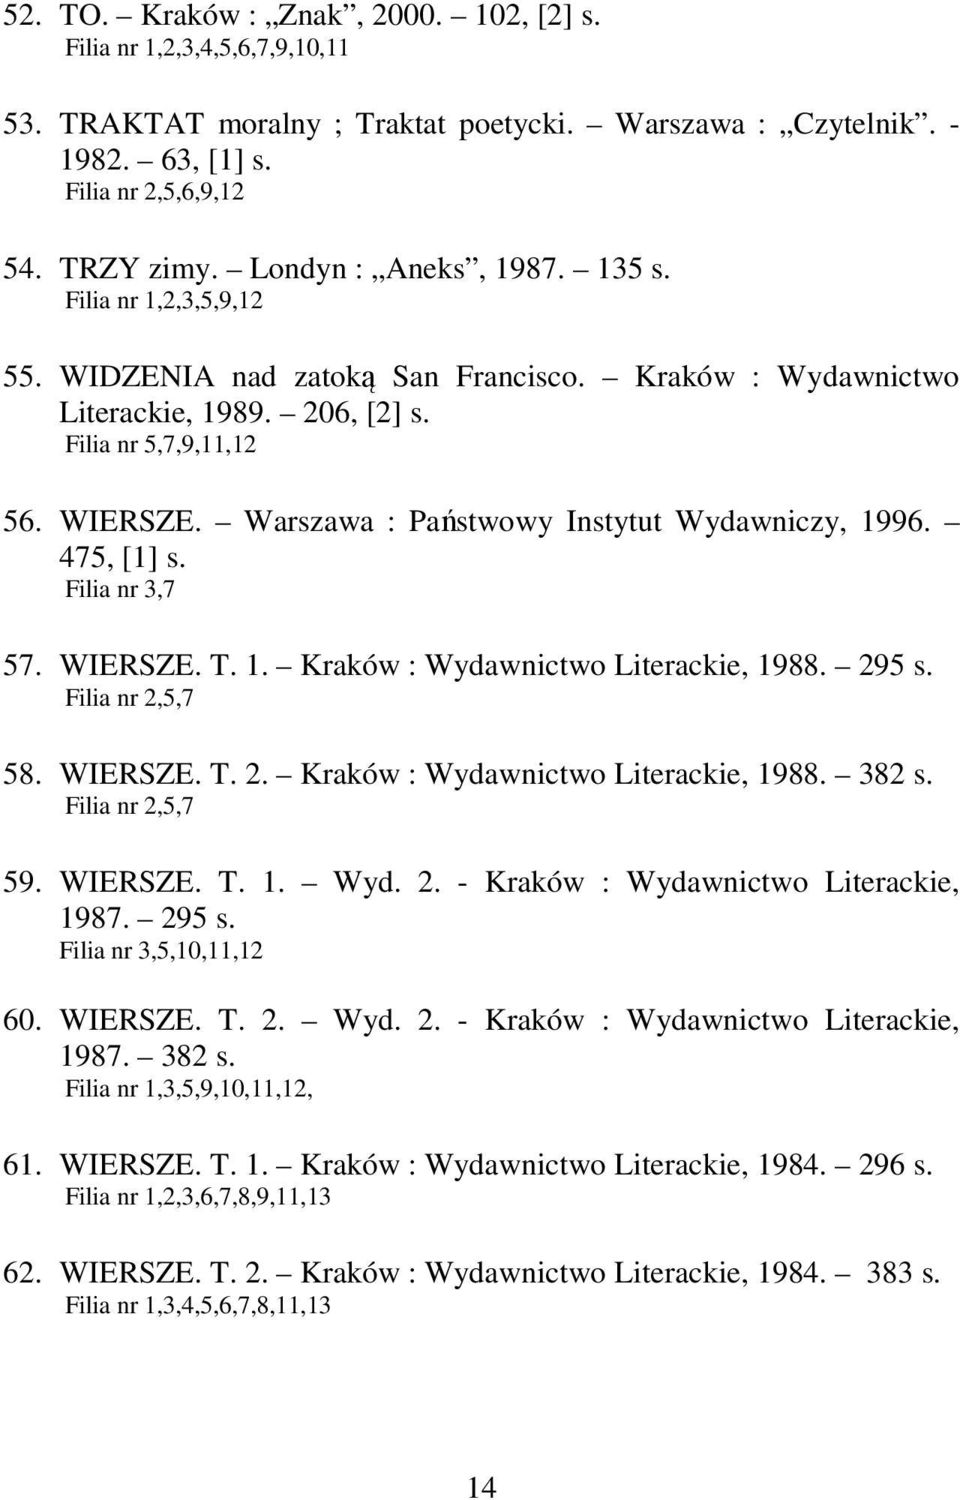 Warszawa : Państwowy Instytut Wydawniczy, 1996. 475, [1] s. Filia nr 3,7 57. WIERSZE. T. 1. Kraków : Wydawnictwo Literackie, 1988. 295 s. Filia nr 2,5,7 58. WIERSZE. T. 2. Kraków : Wydawnictwo Literackie, 1988. 382 s.